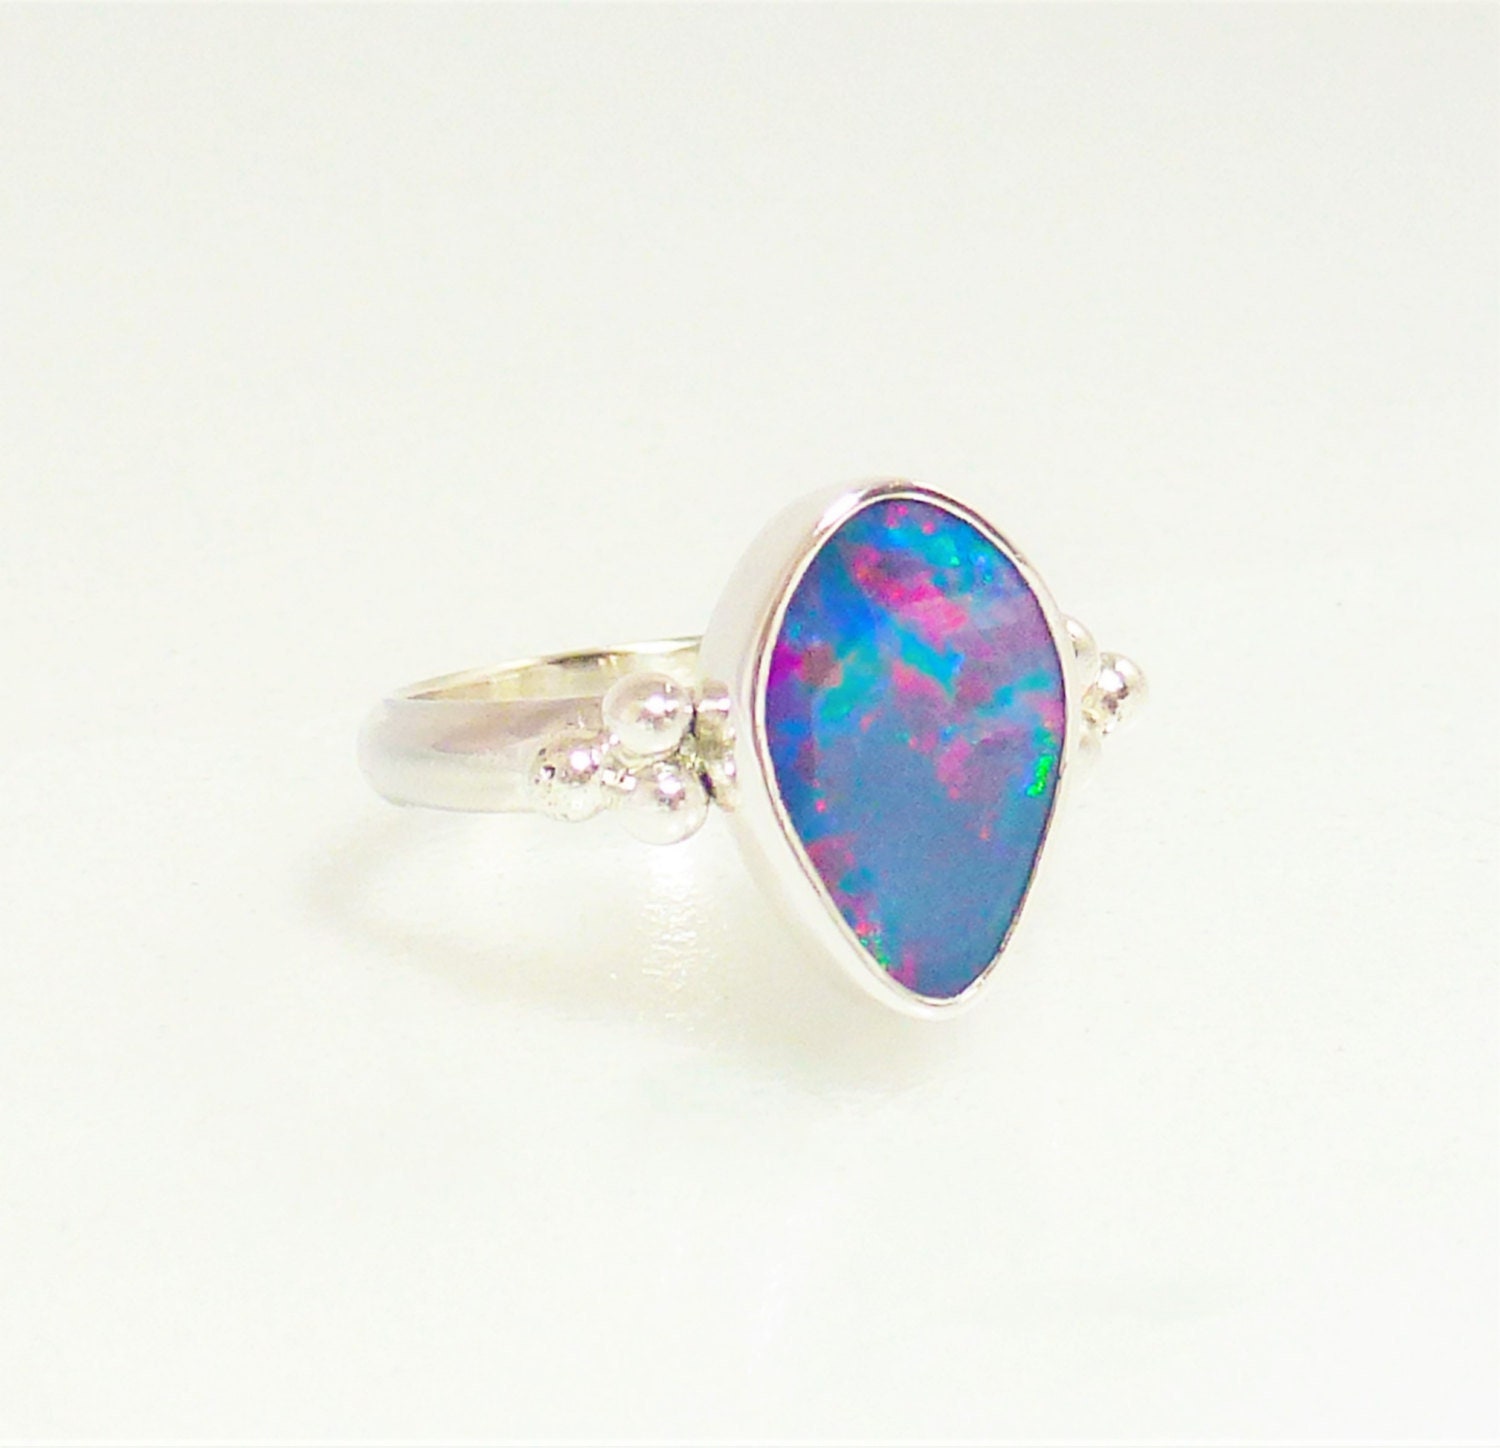 Tear shape Multicolor Opal doublet Ring Australian Opal | Etsy